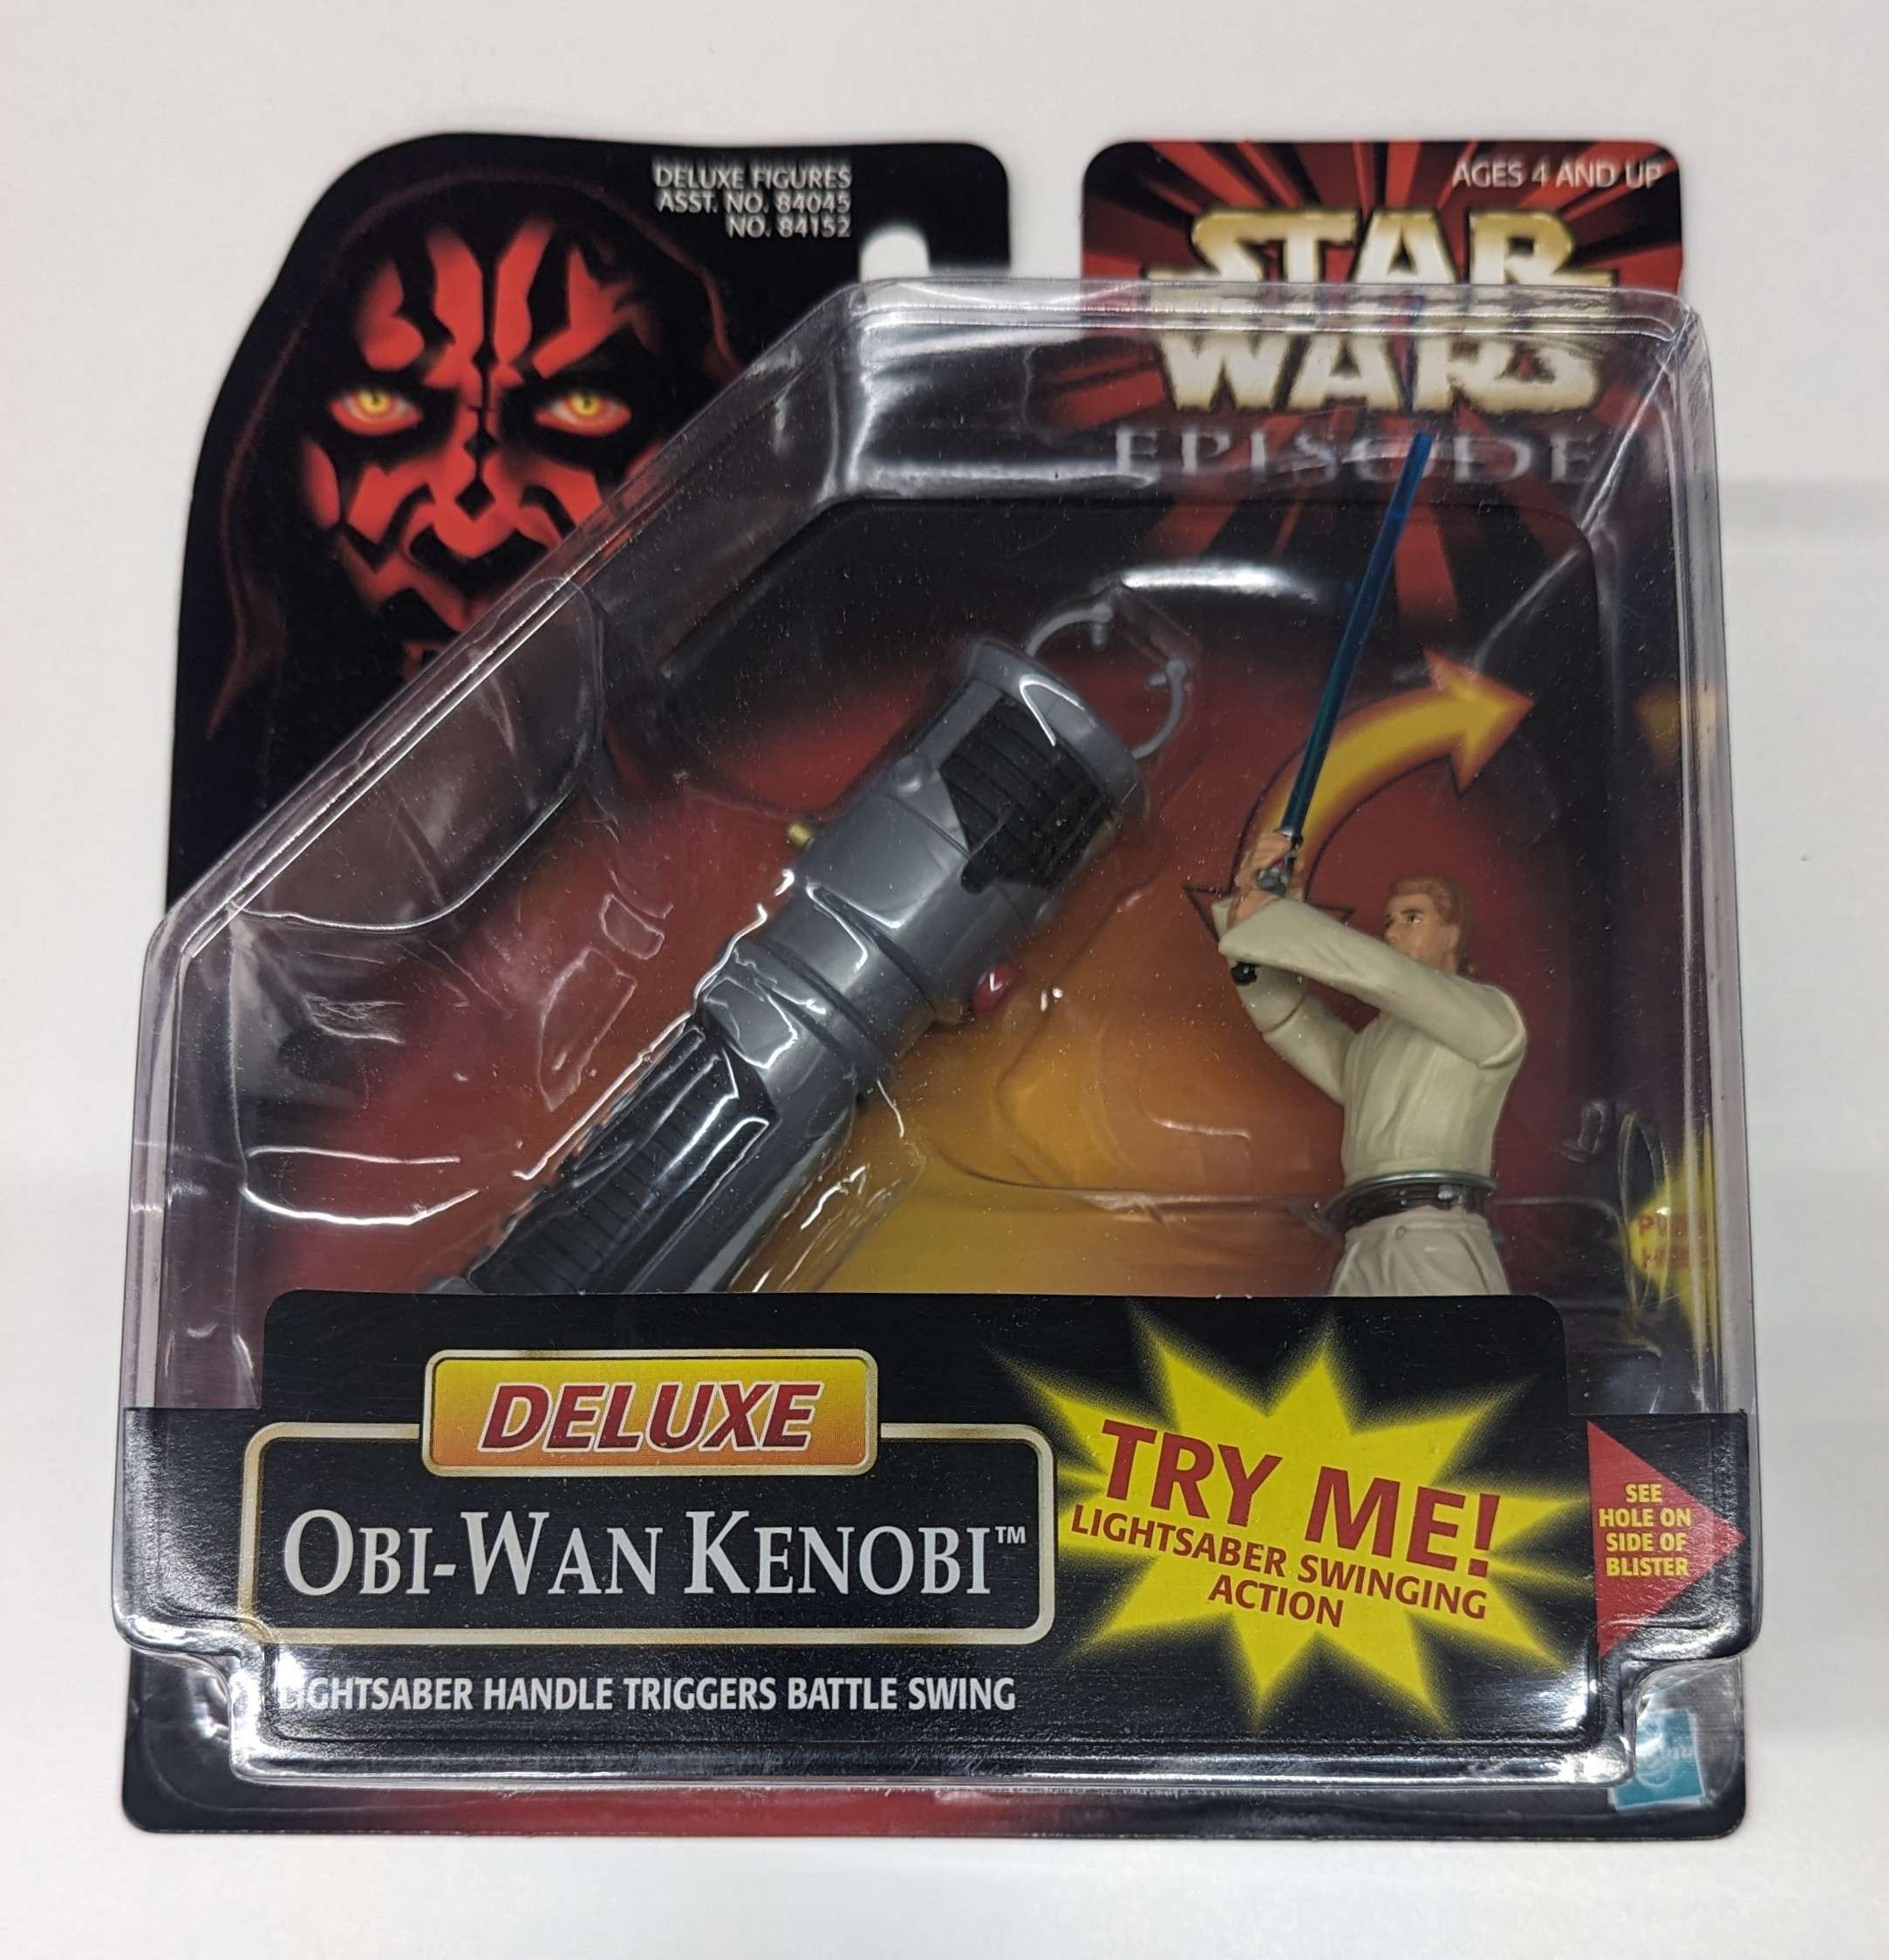 Star Wars Episode 1 Deluxe Obi-Wan Kenobi Lightsaber